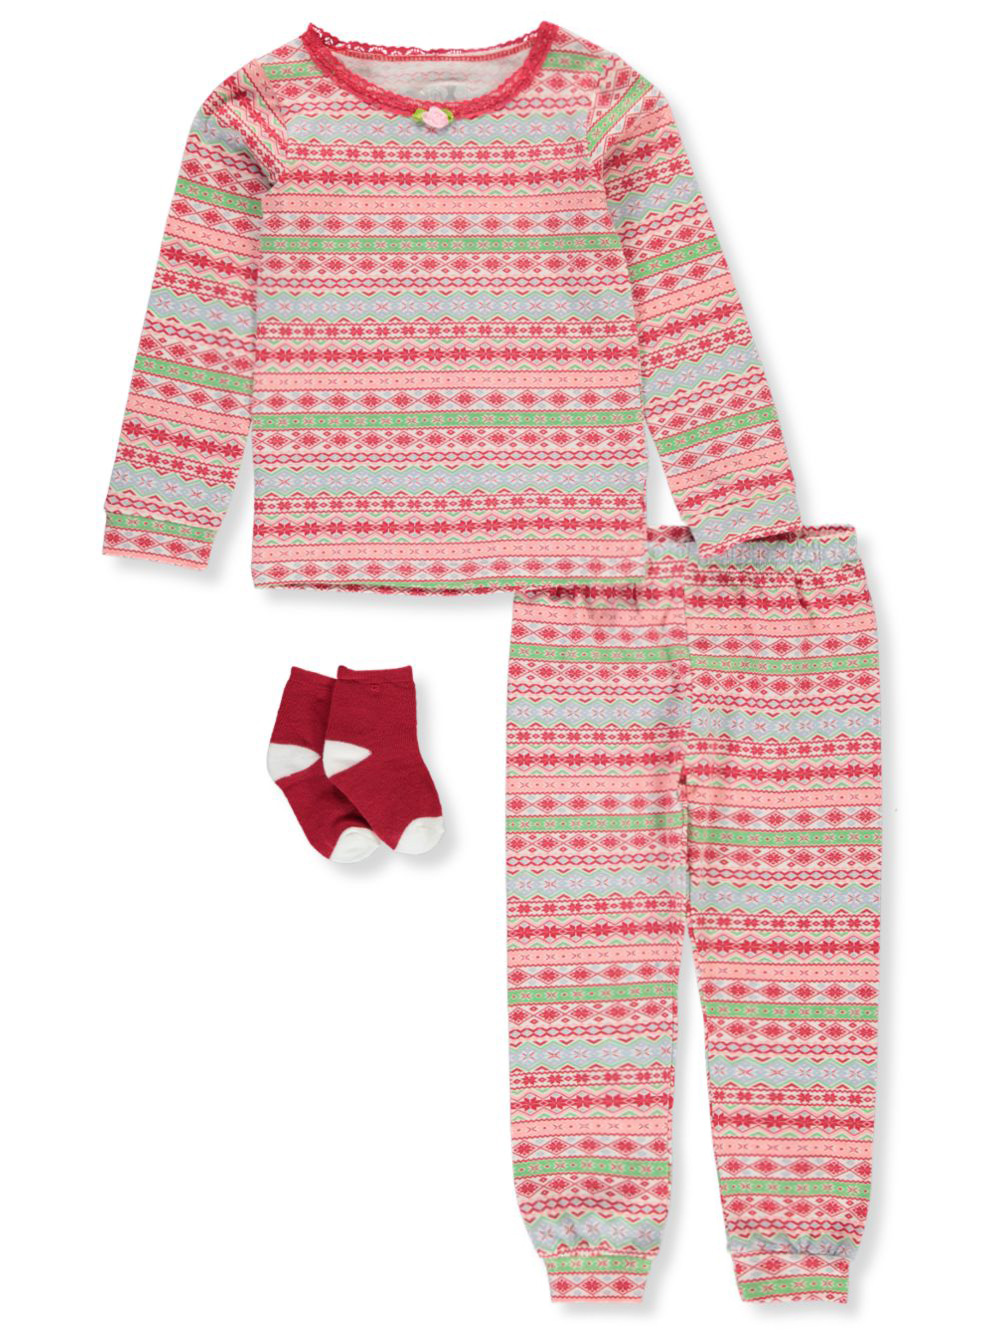 Holiday Fair Isle 3-Piece Pajamas